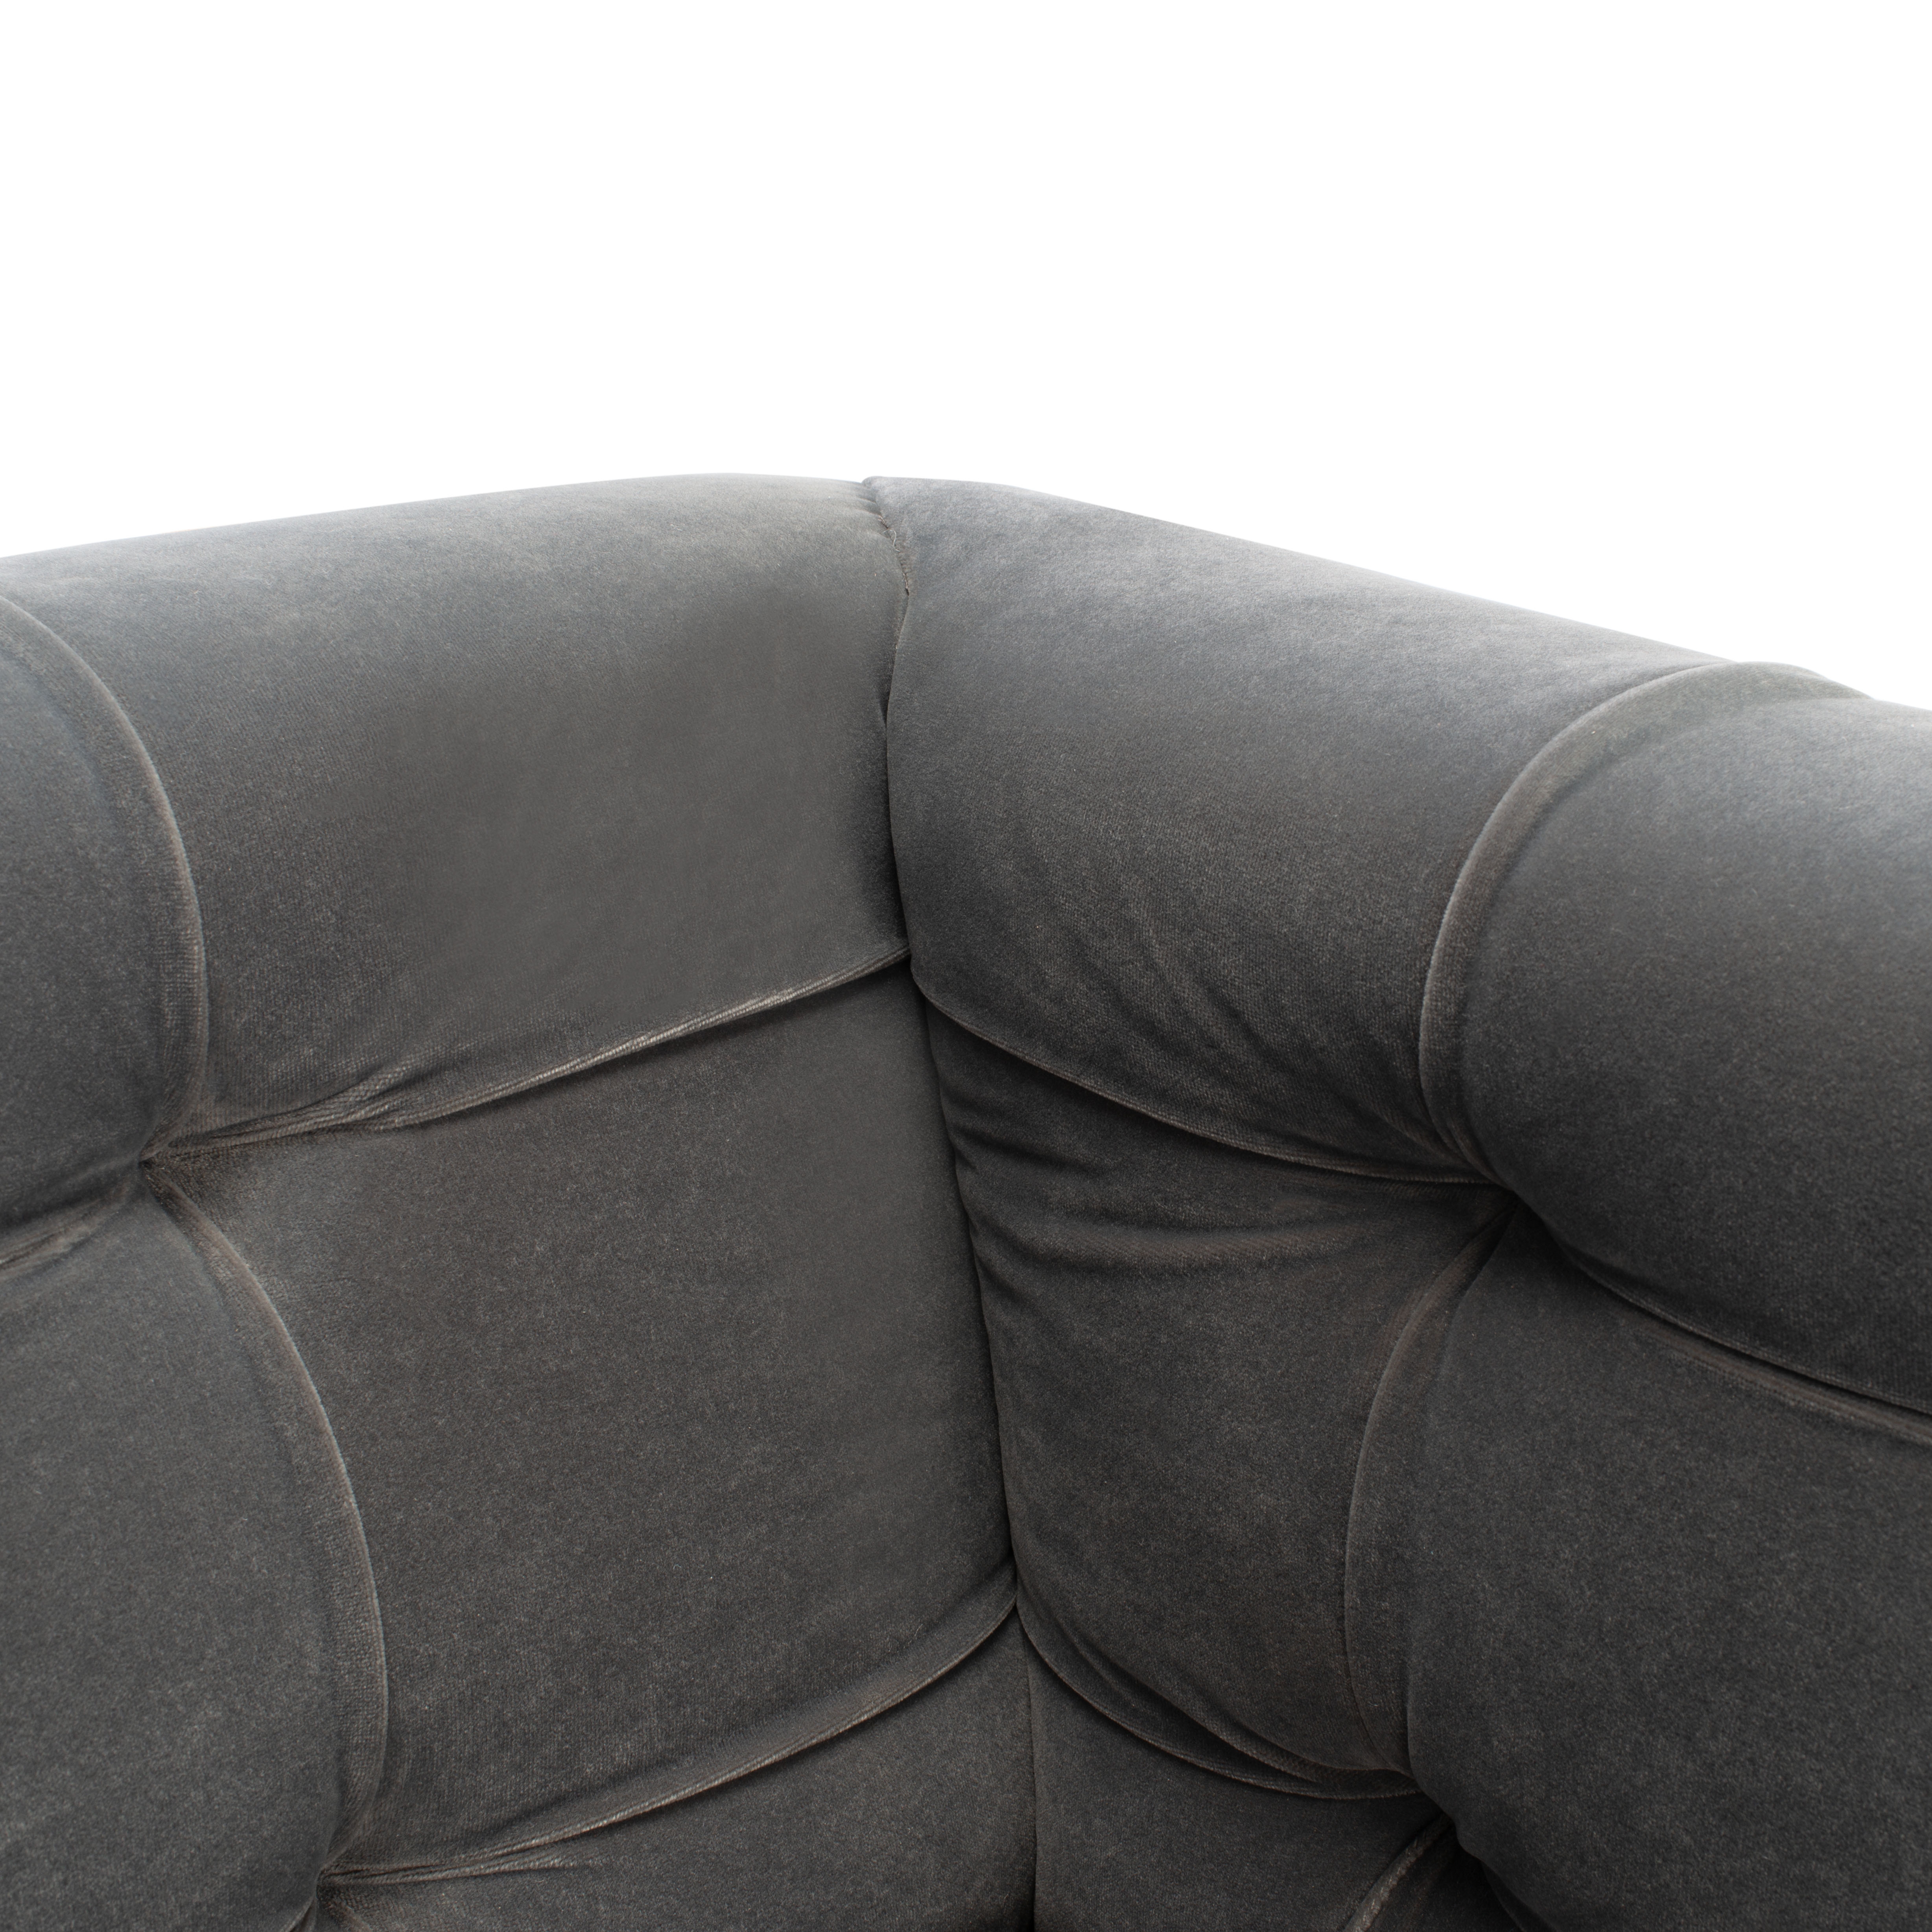 Myra Modern Tufted Sofa - Charcoal - Arlo Home - Image 3